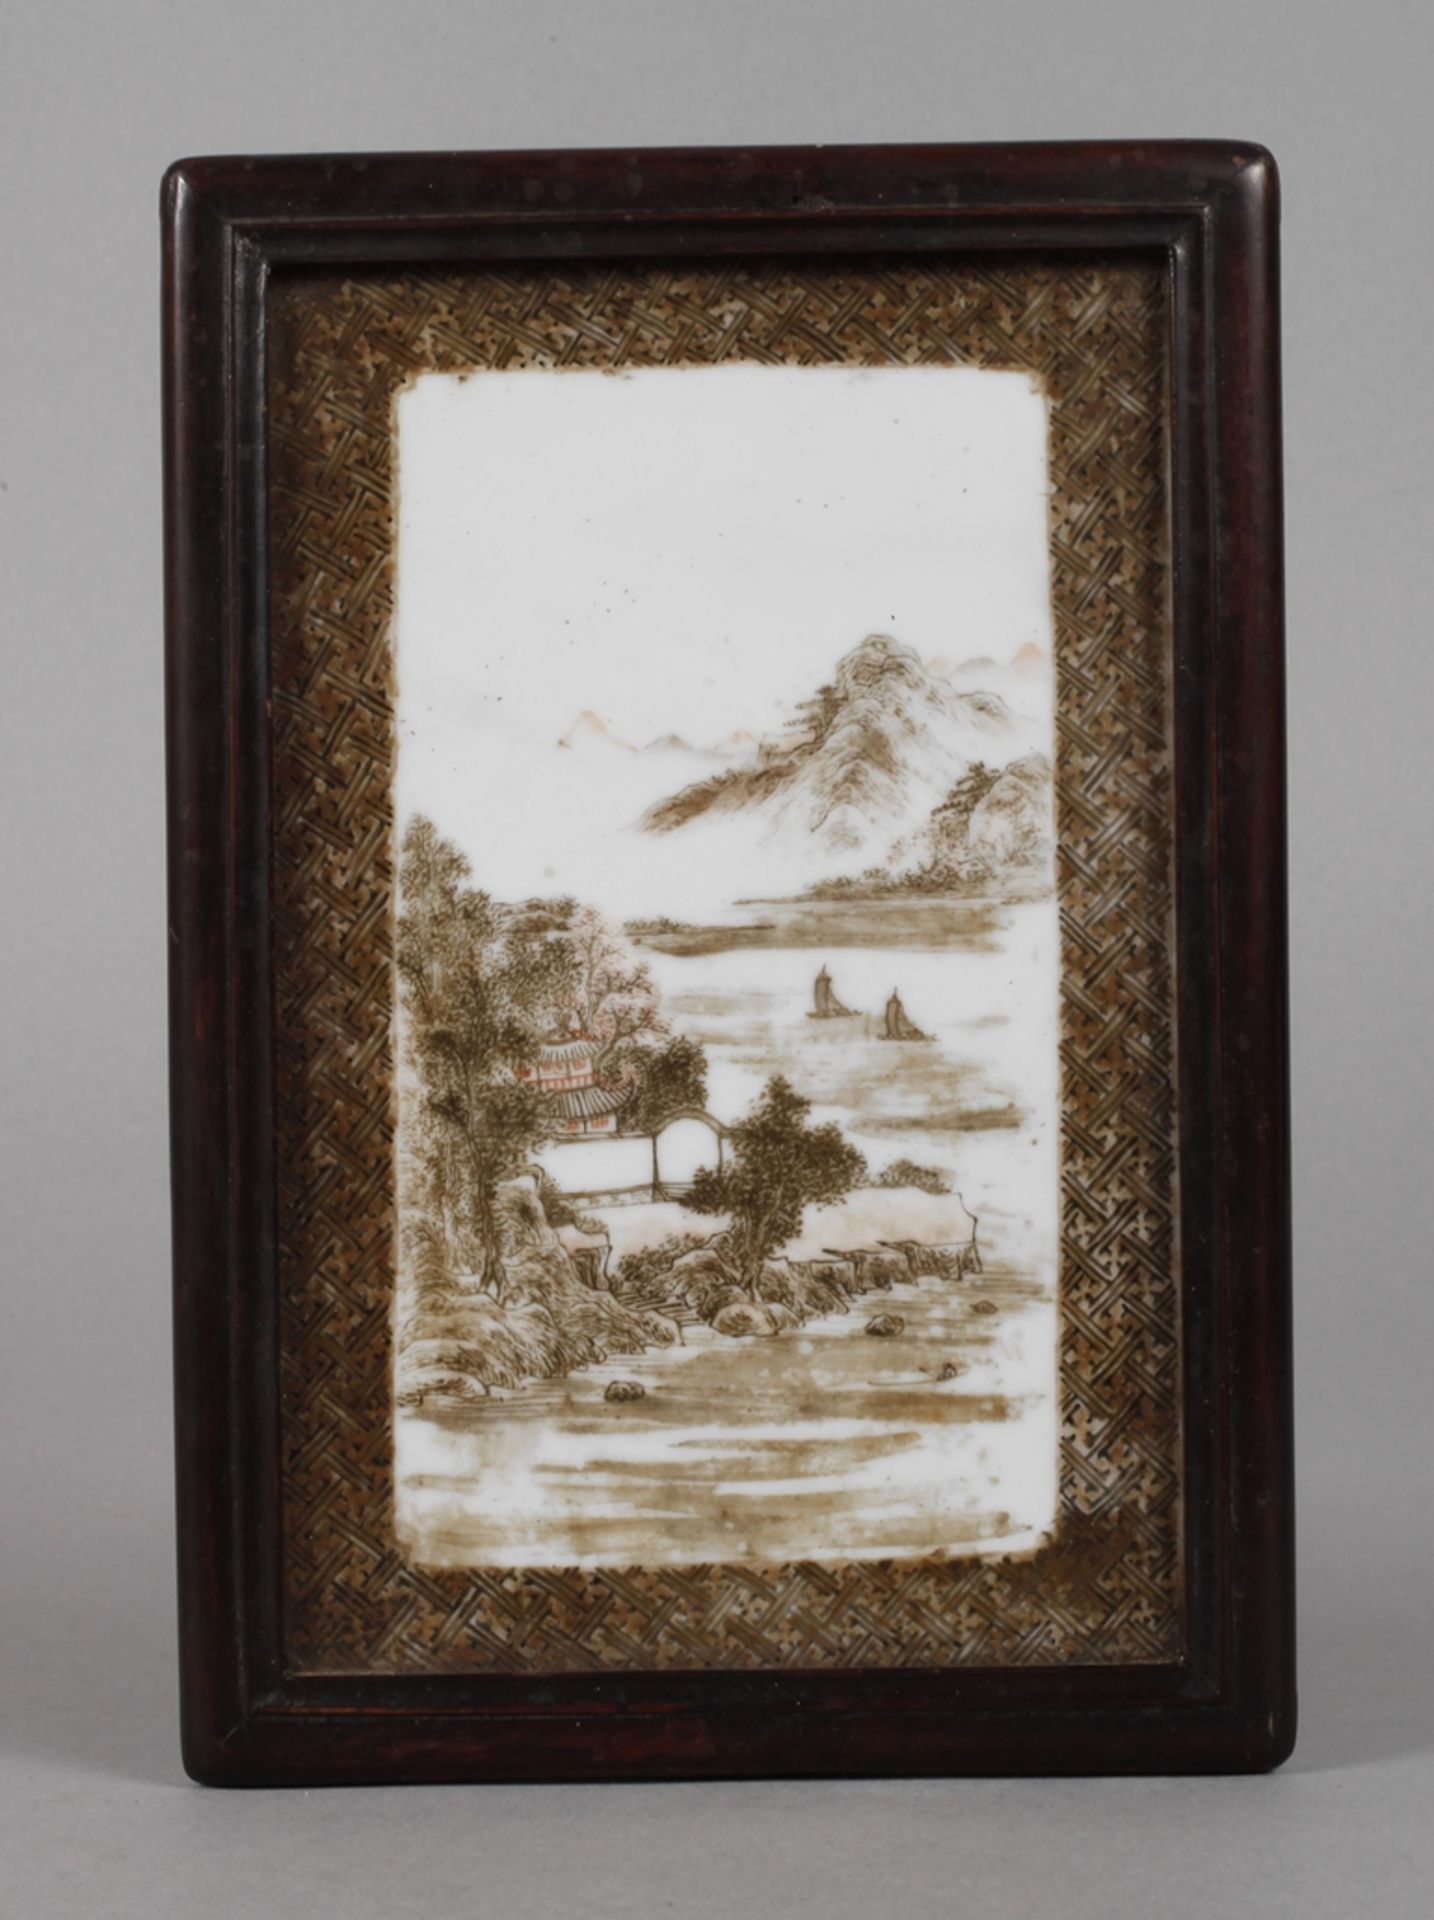 Kleine Porzellanbildplatteum 1900, ungemarkt, hochrechteckige Platte mit polychromer